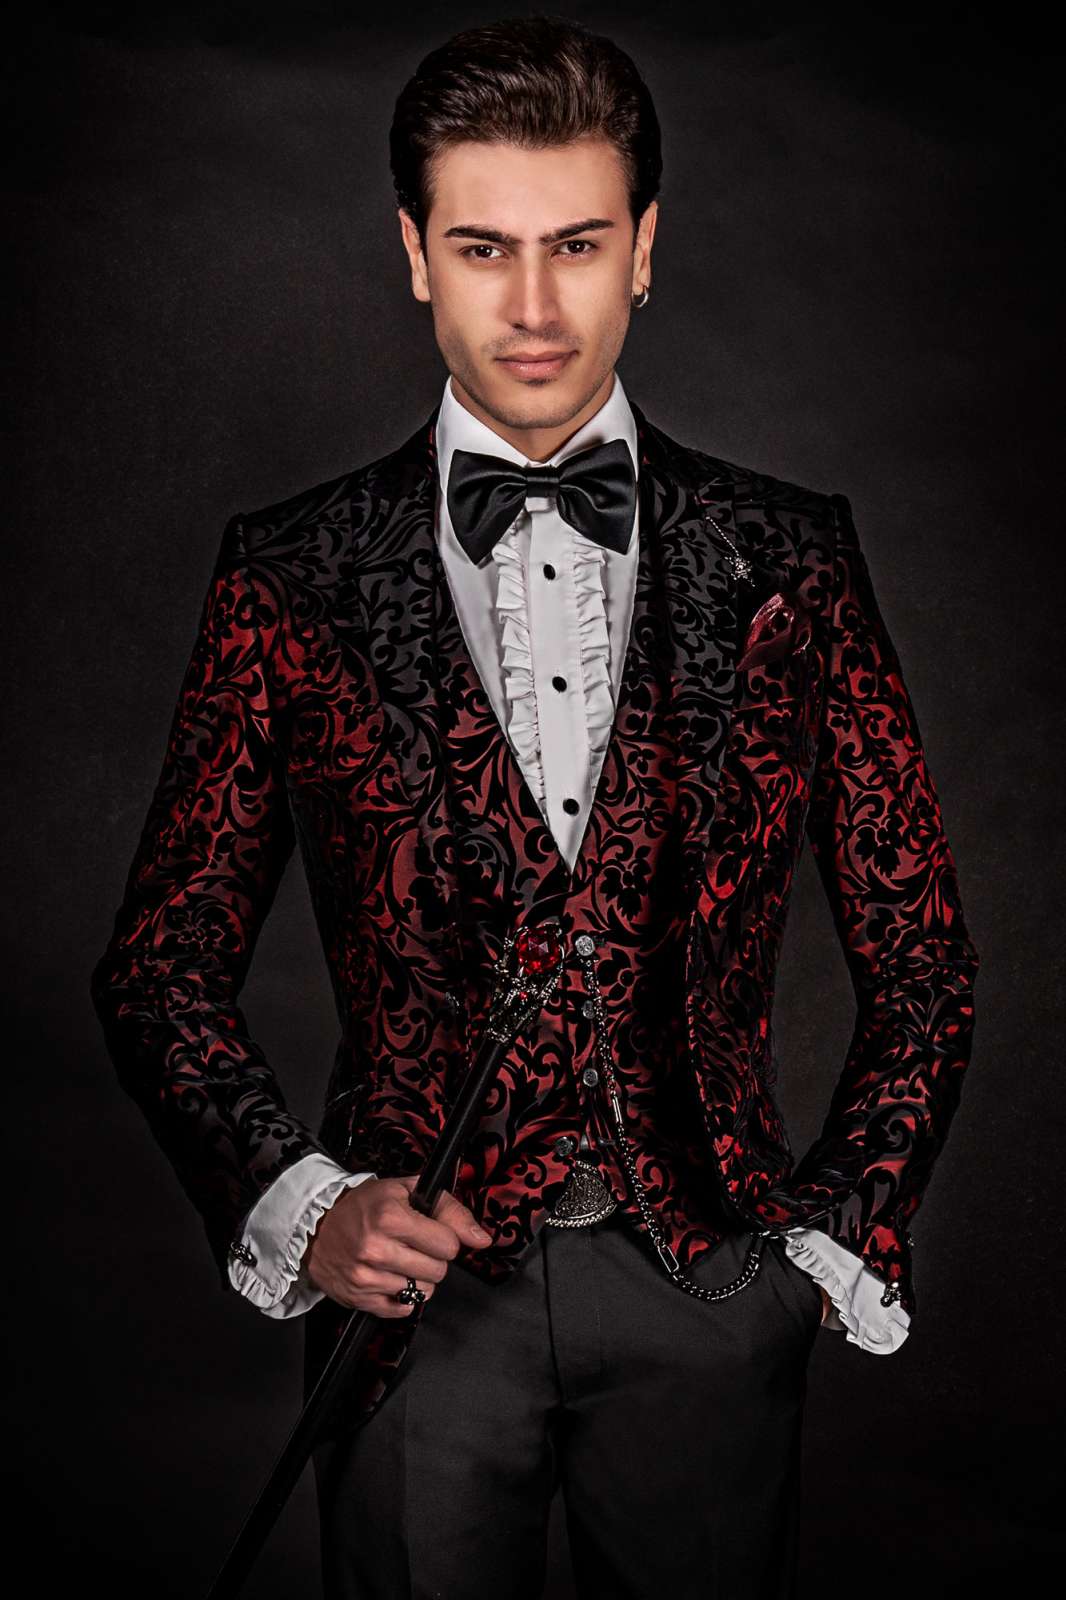 Esmoquin moda terciopelo brocado floral rojo negro. Traje de novio 2512 Mario Moyano